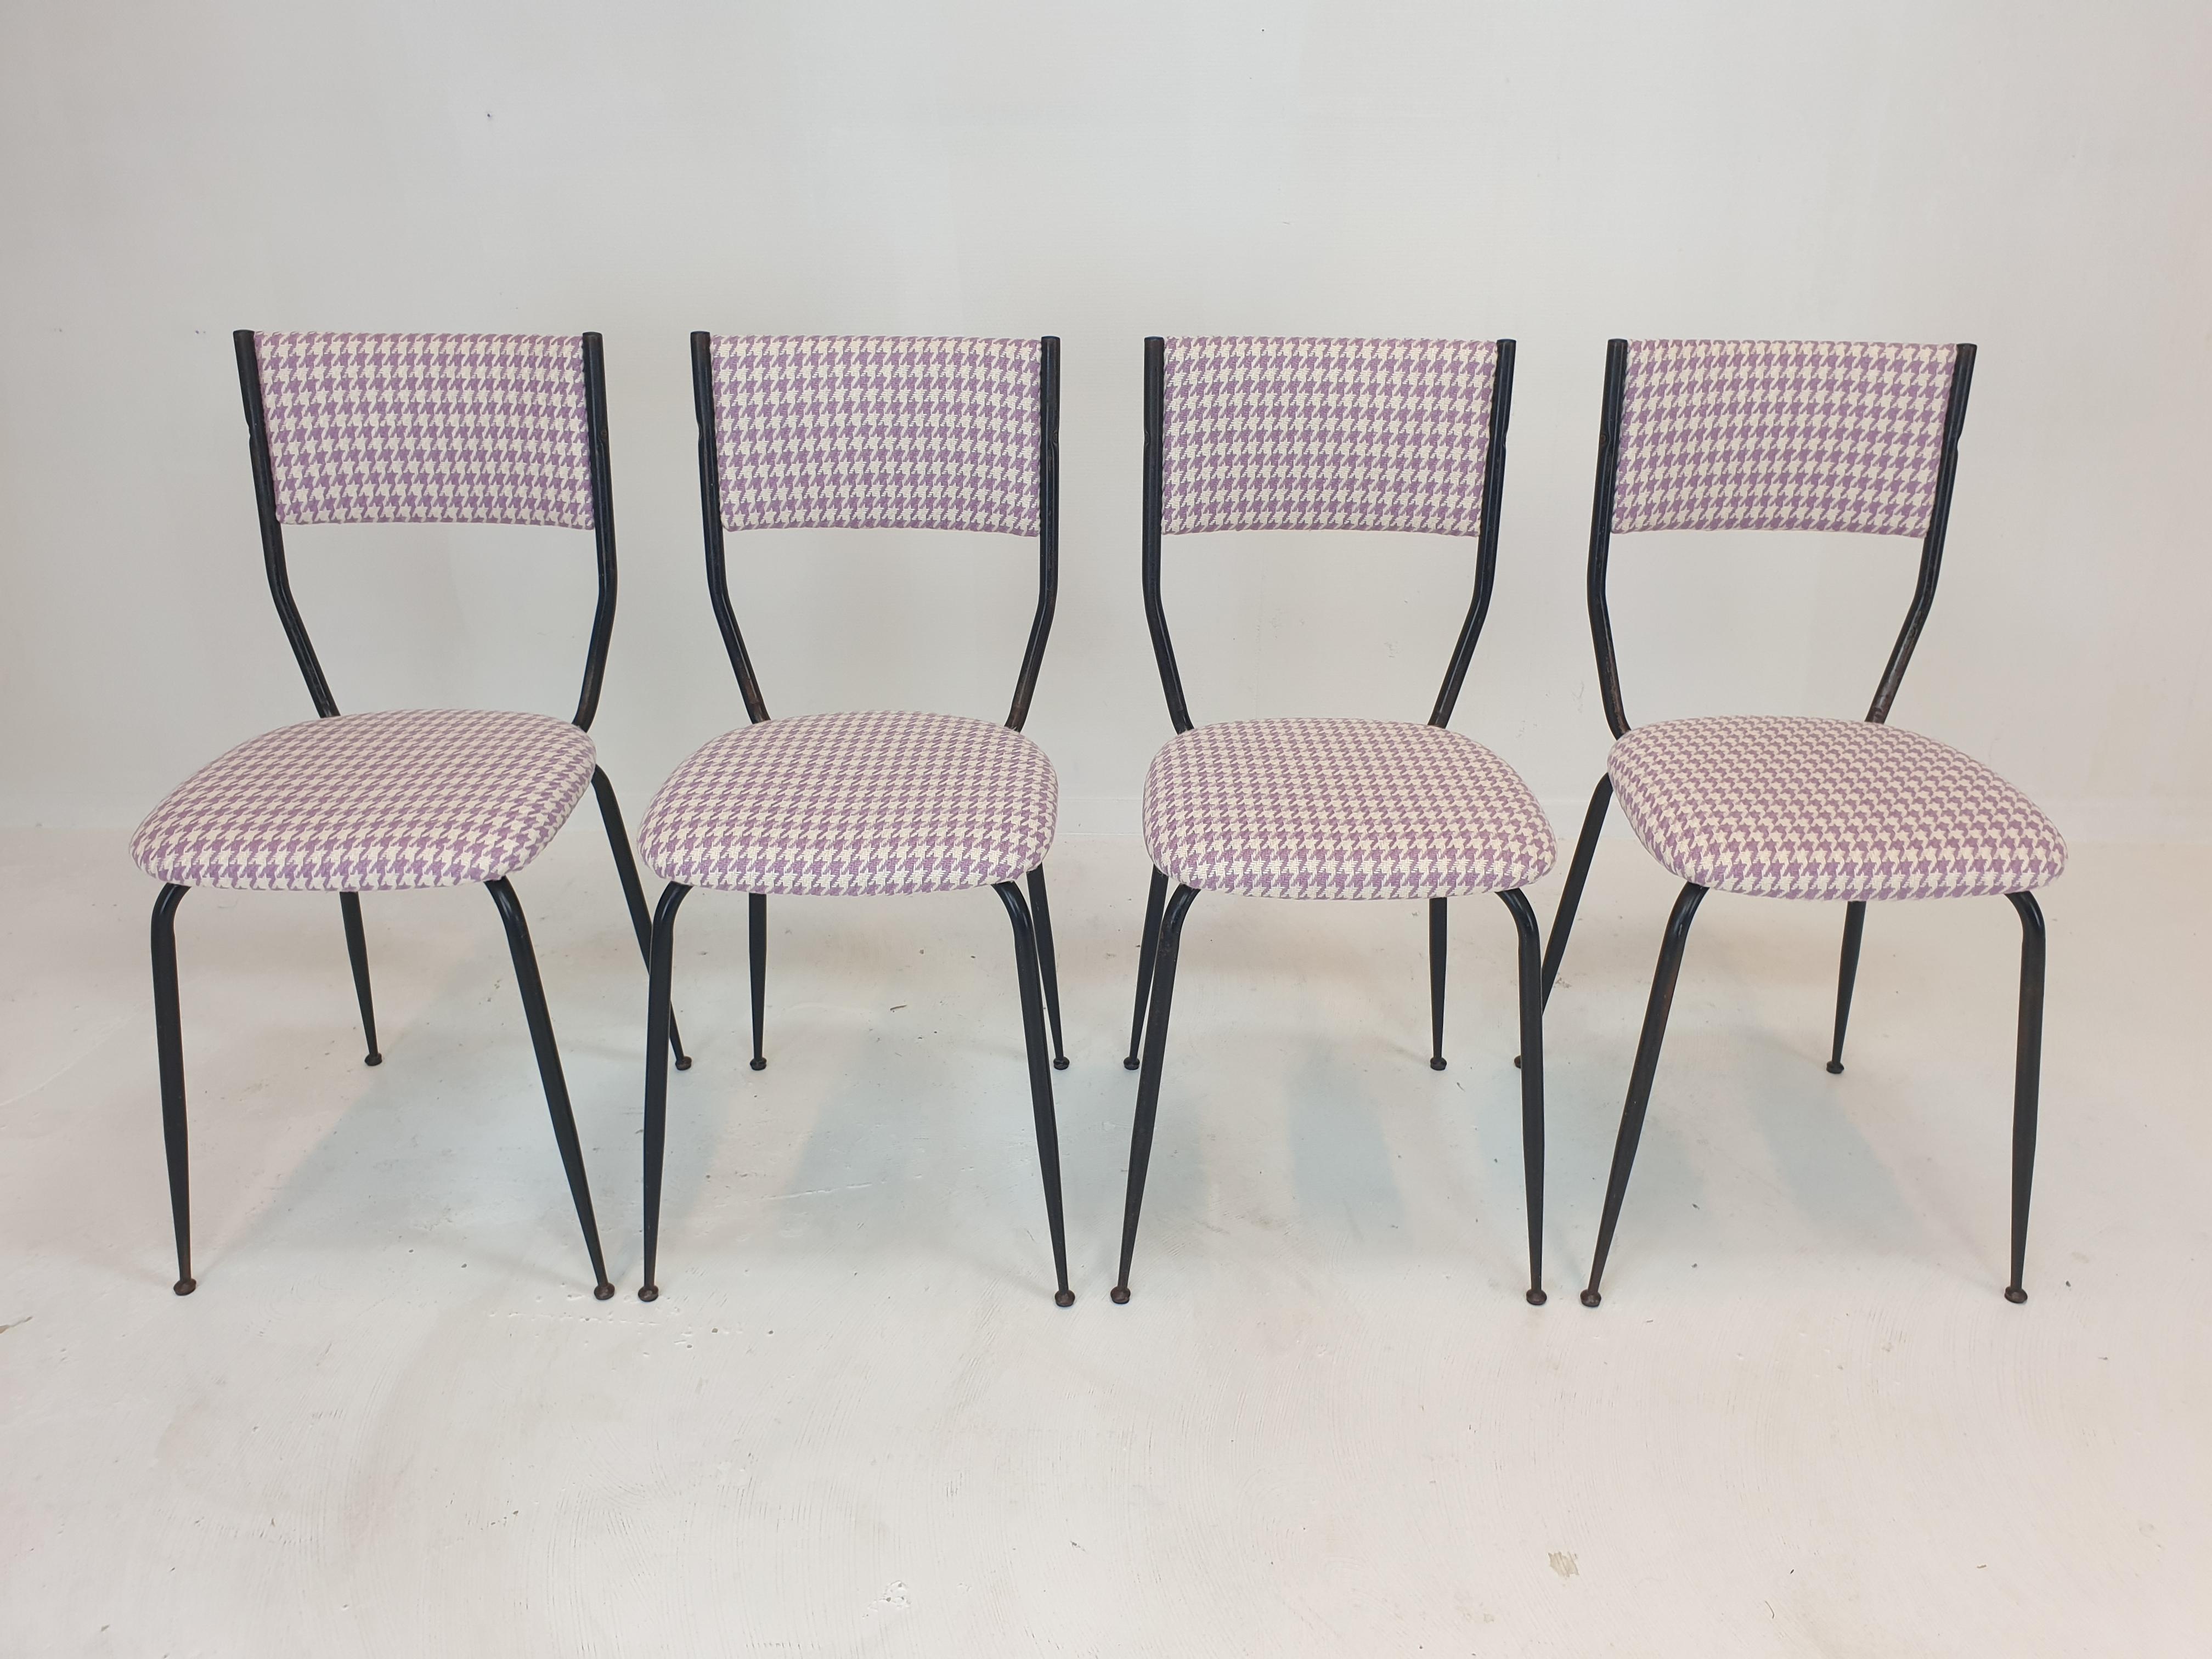 Bel ensemble de 4 fauteuils italiens, années 1960.
Fabriqué en acier laqué noir.

Les chaises sont restaurées avec un nouveau tissu et une nouvelle mousse, elles sont en parfait état.
Ils sont retapissés avec un tissu C & C Milano très exclusif et